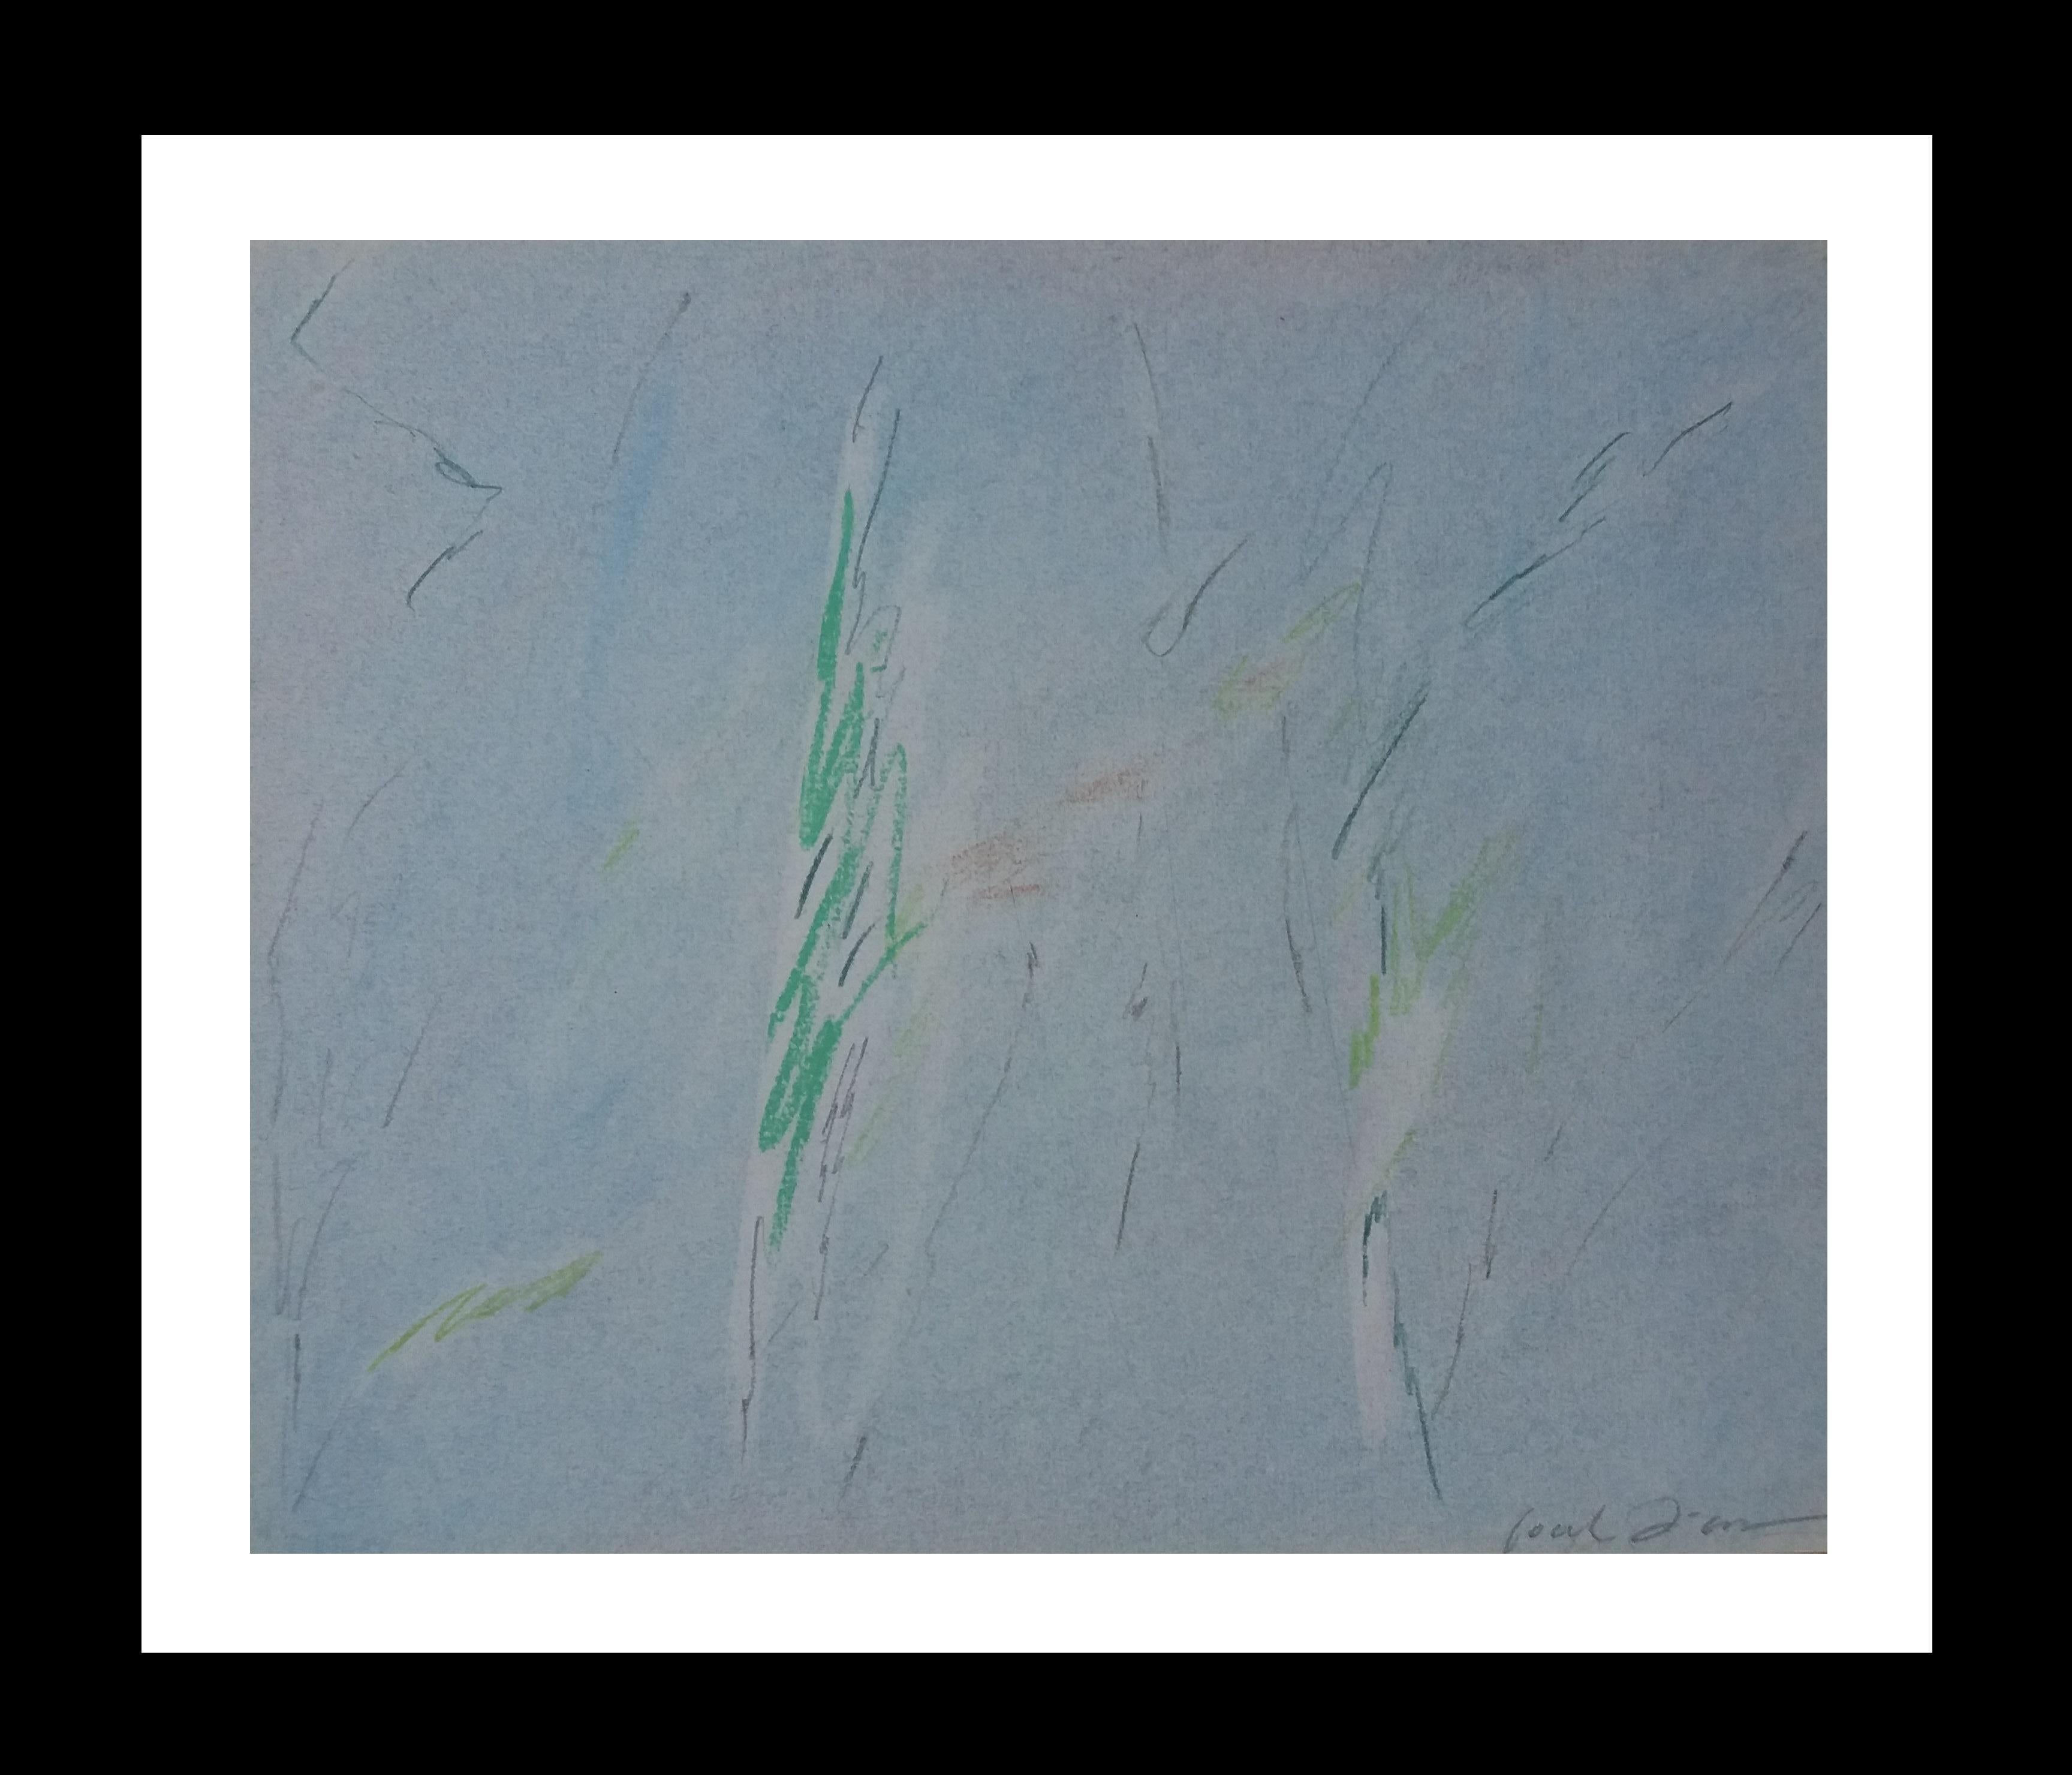 sin titulo original pastel abstract painting
Manel Font Díaz (Barcelona, 1950) es un artista centrado especialmente en la pintura, primero formado en la facultad de Bellas Artes de la Universidad de Barcelona y luego en la Escuela Massana. A esta